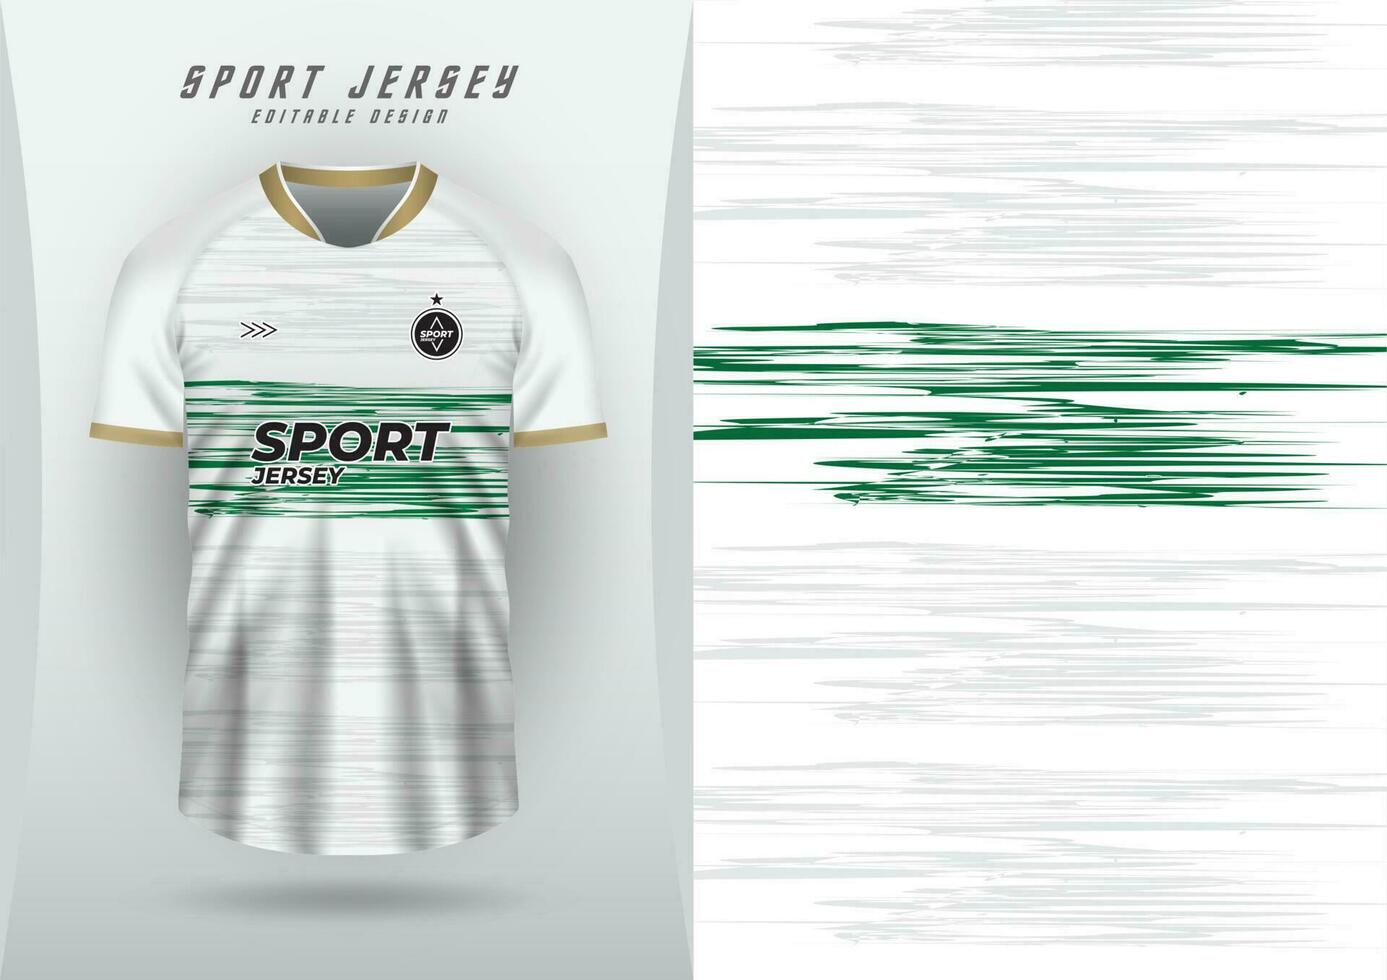 Hintergrund zum Sport Jersey Fußball Jersey Laufen Jersey Rennen Jersey Weiß Grün gebürstet Muster vektor